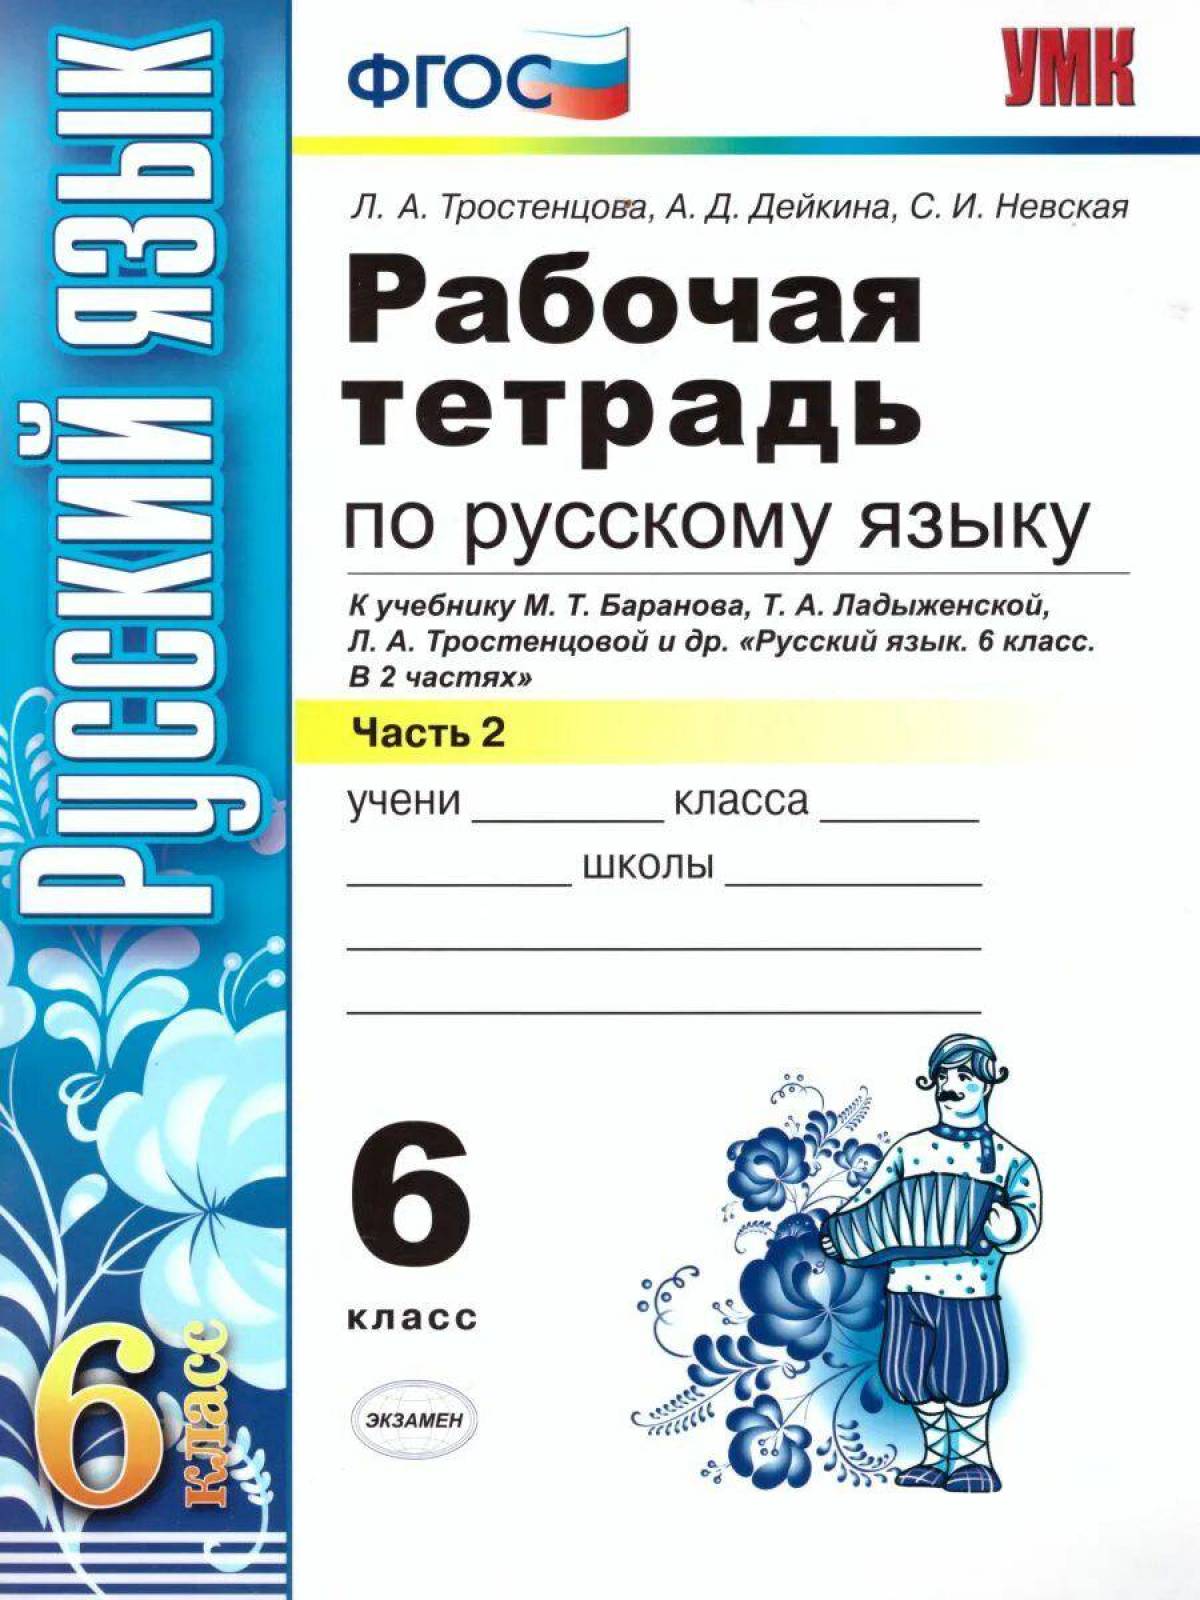 6 класс русский язык #23